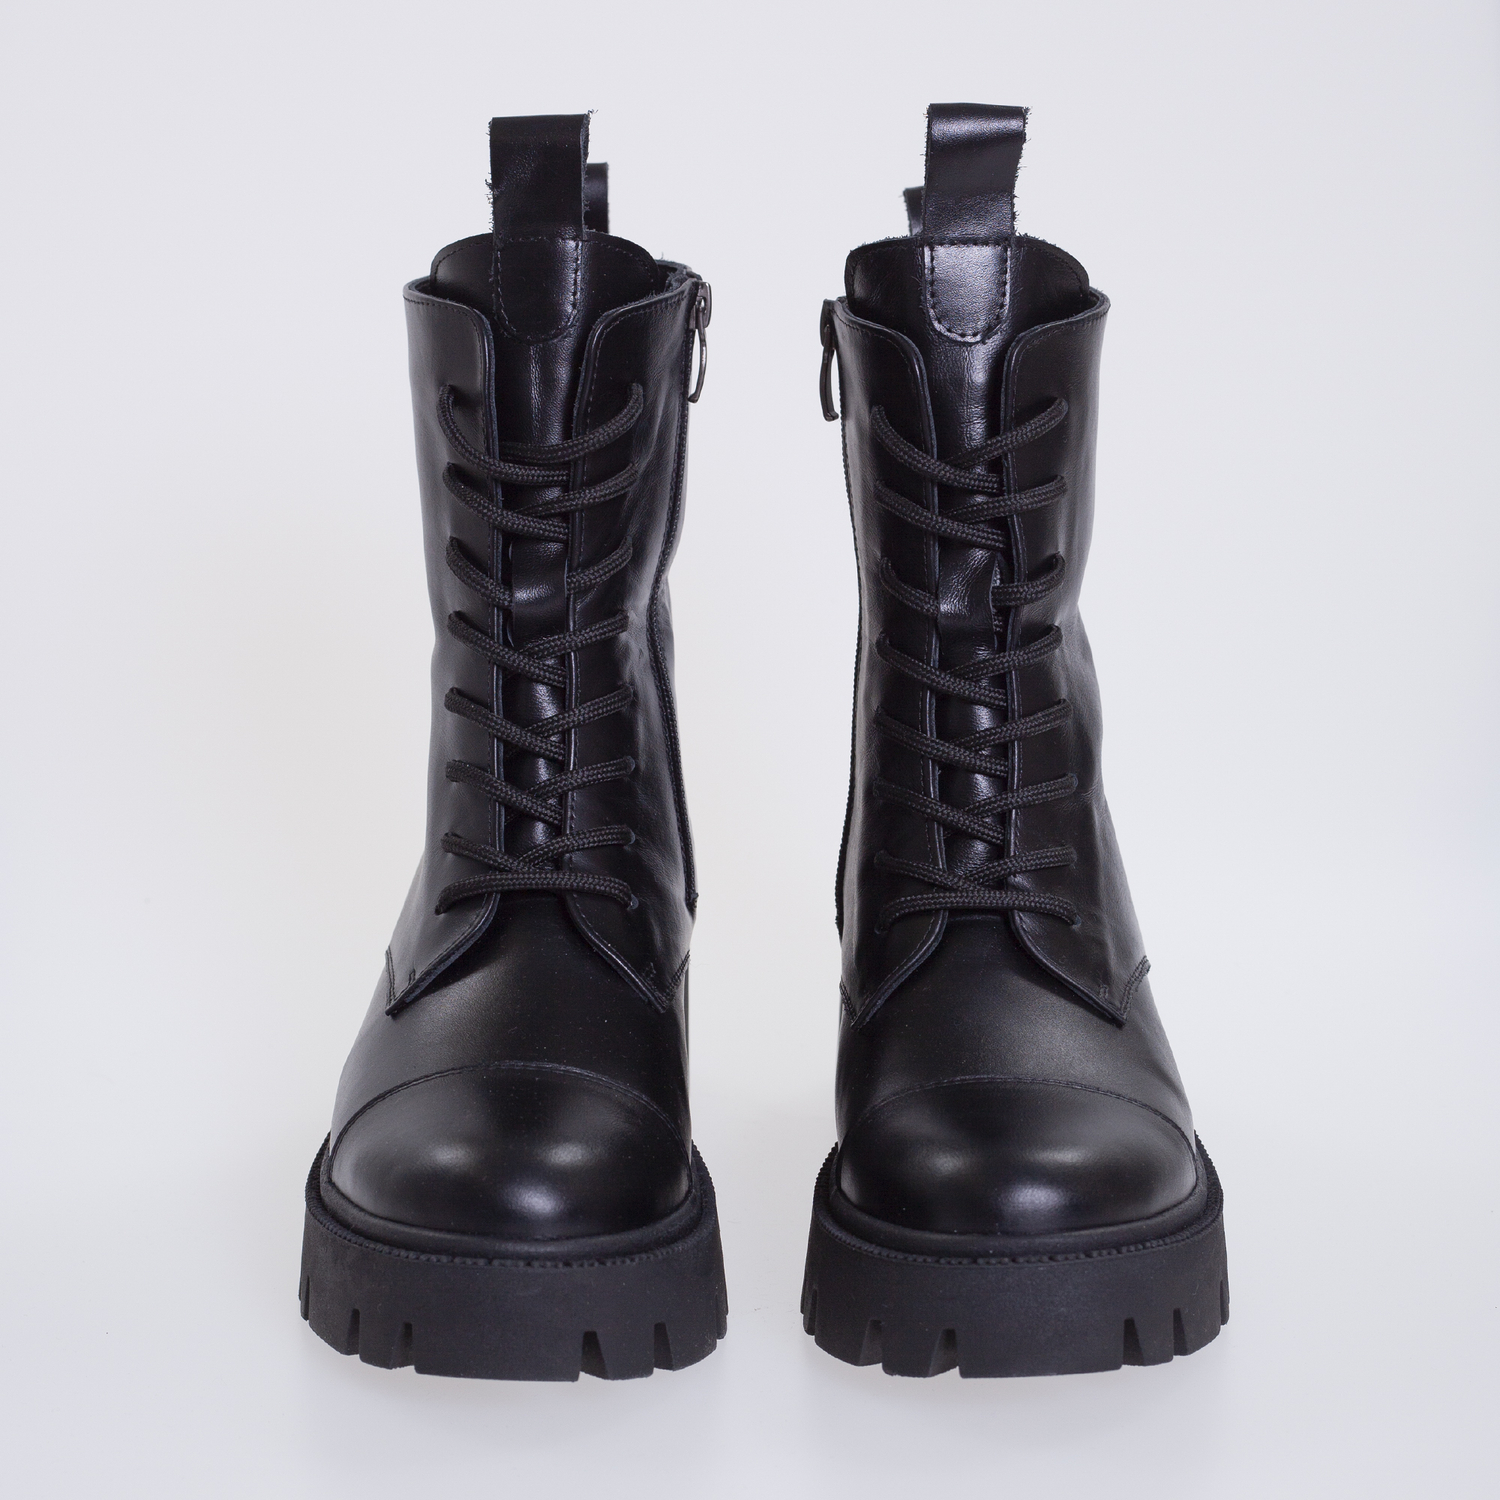 Чёрные ботинки с мехом Stefano Rossi для женщин купить за 9344 руб в СтаромОсколе - SKU12240873